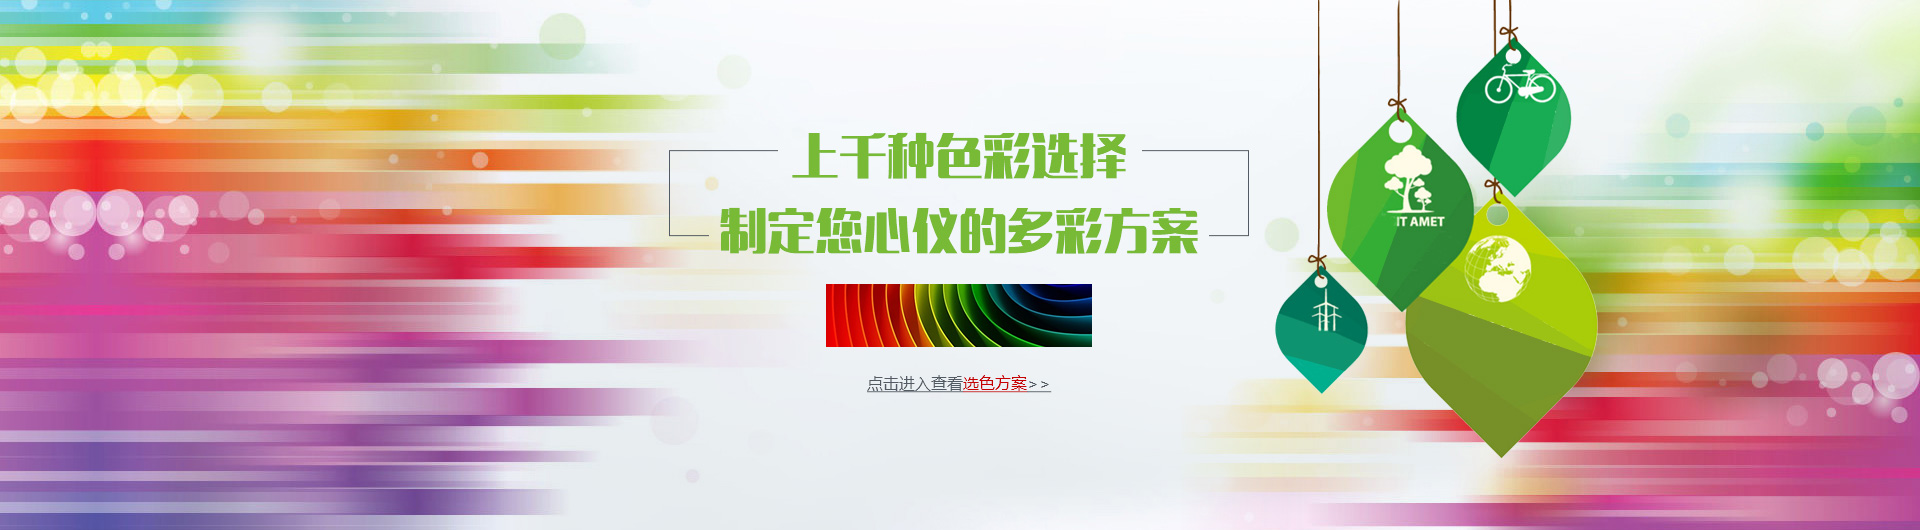 河南省诺华电器材料有限公司